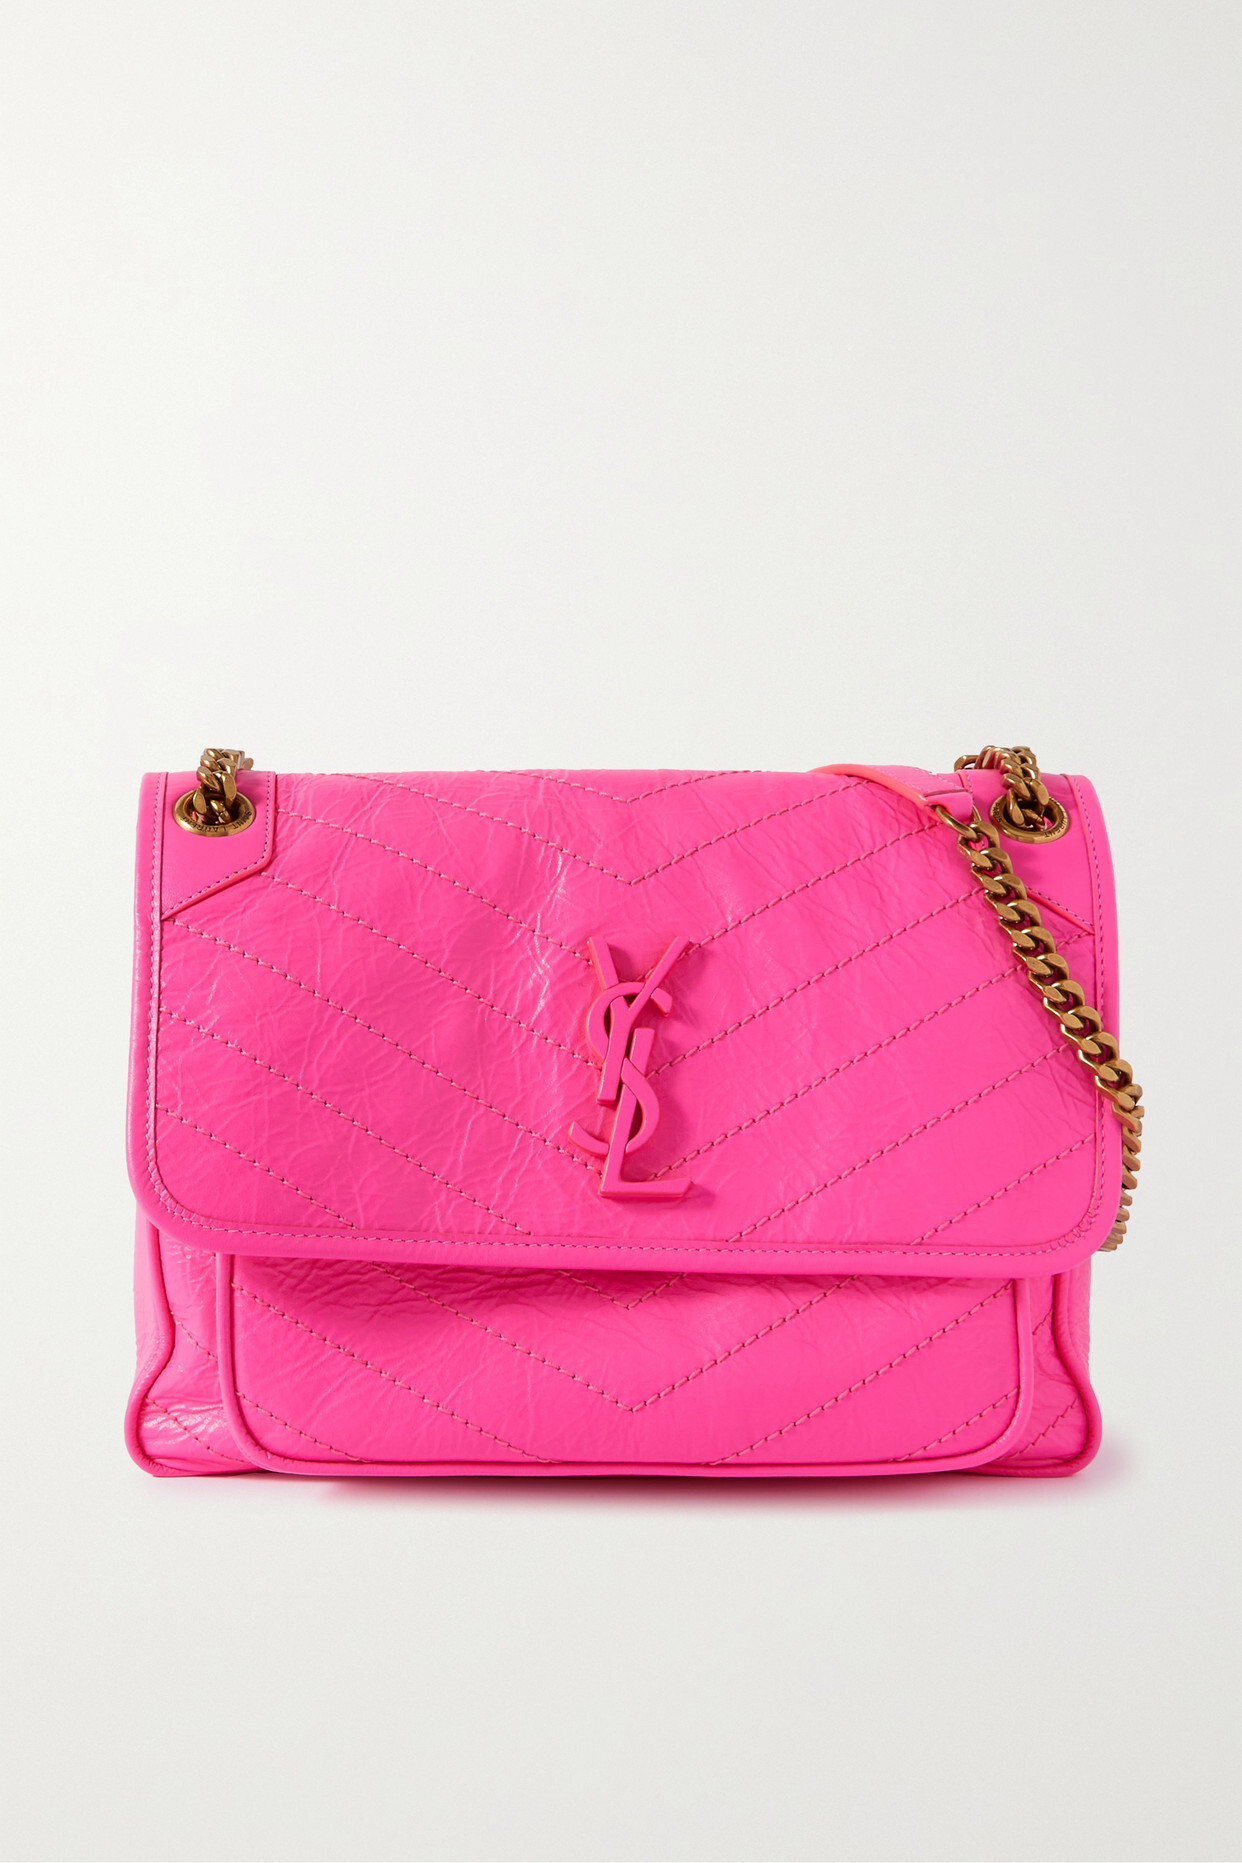 SAINT LAURENT - Niki Medium Quilted Crinkled-leather Shoulder Bag - Pink